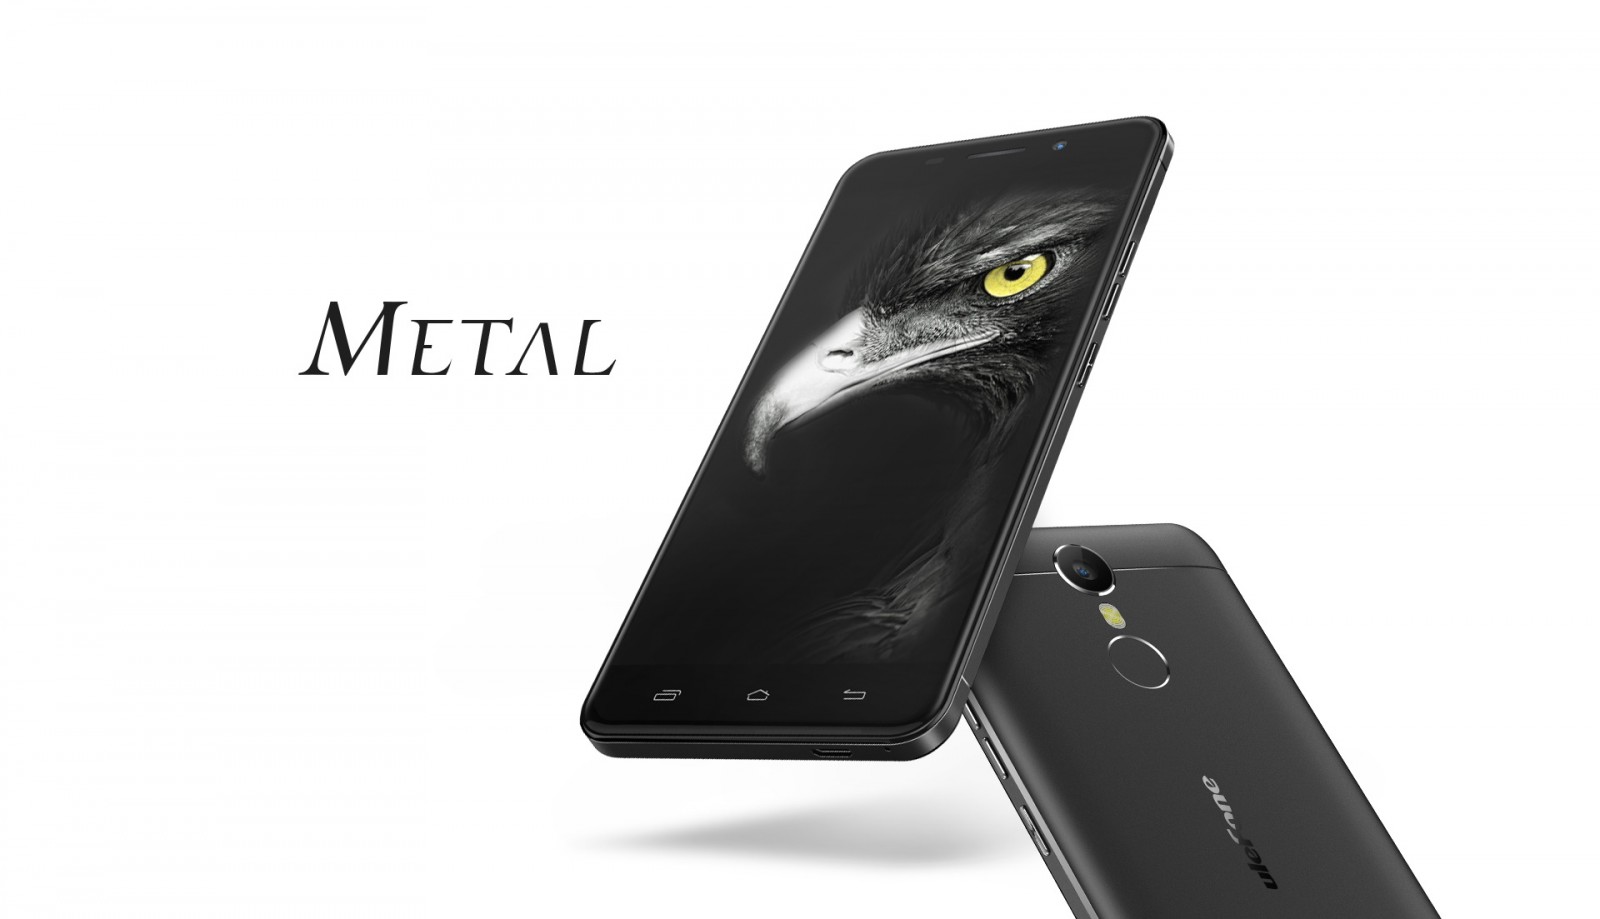  Ulefone Metal имеет металлический корпус и безрамочный дисплей